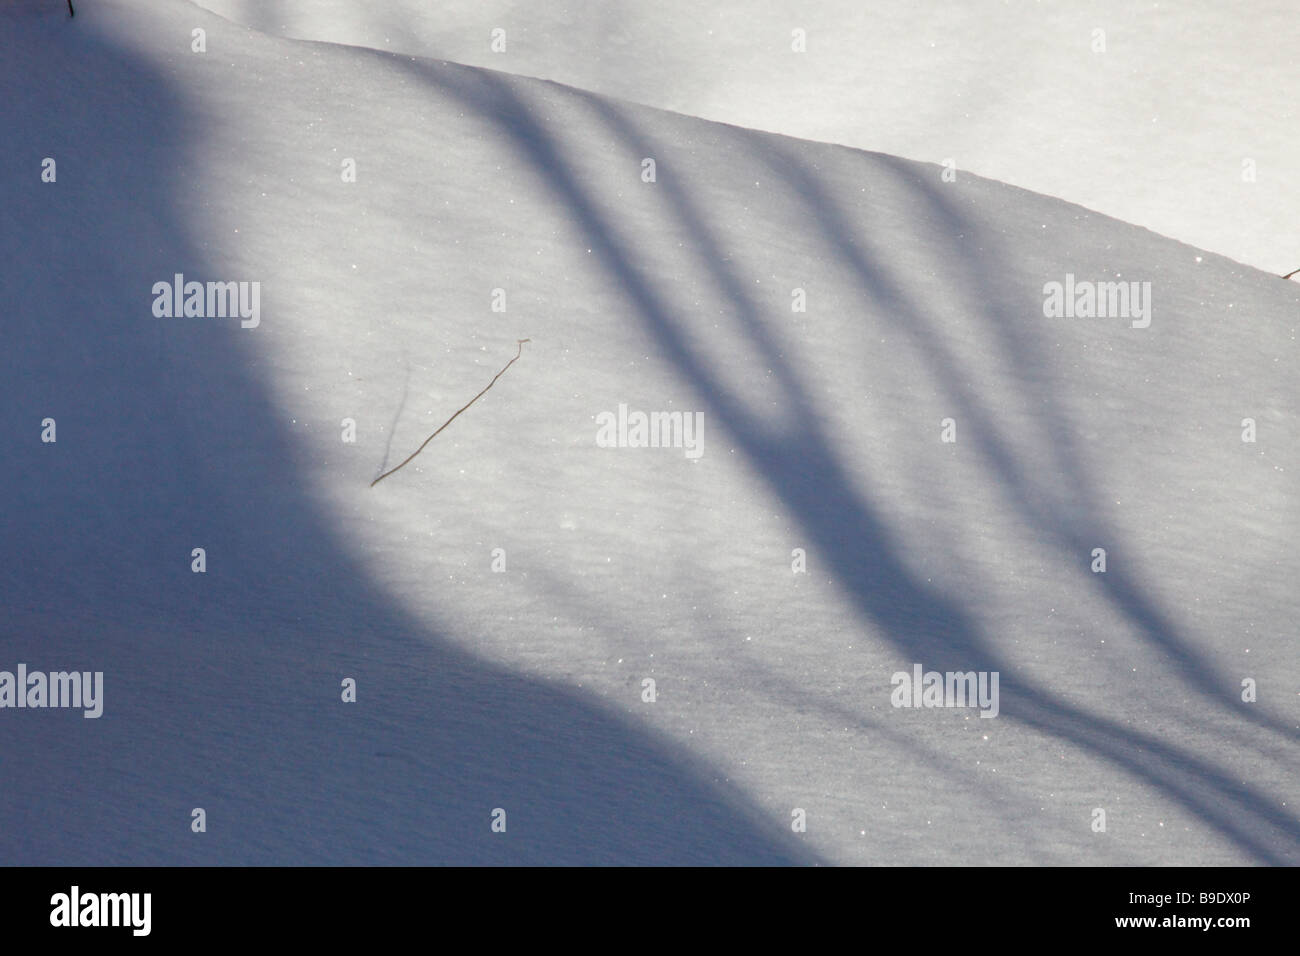 Schatten von Baeumen auf Schnee. Les ombres des arbres sur la neige. Ombre d arbres sur neige Banque D'Images